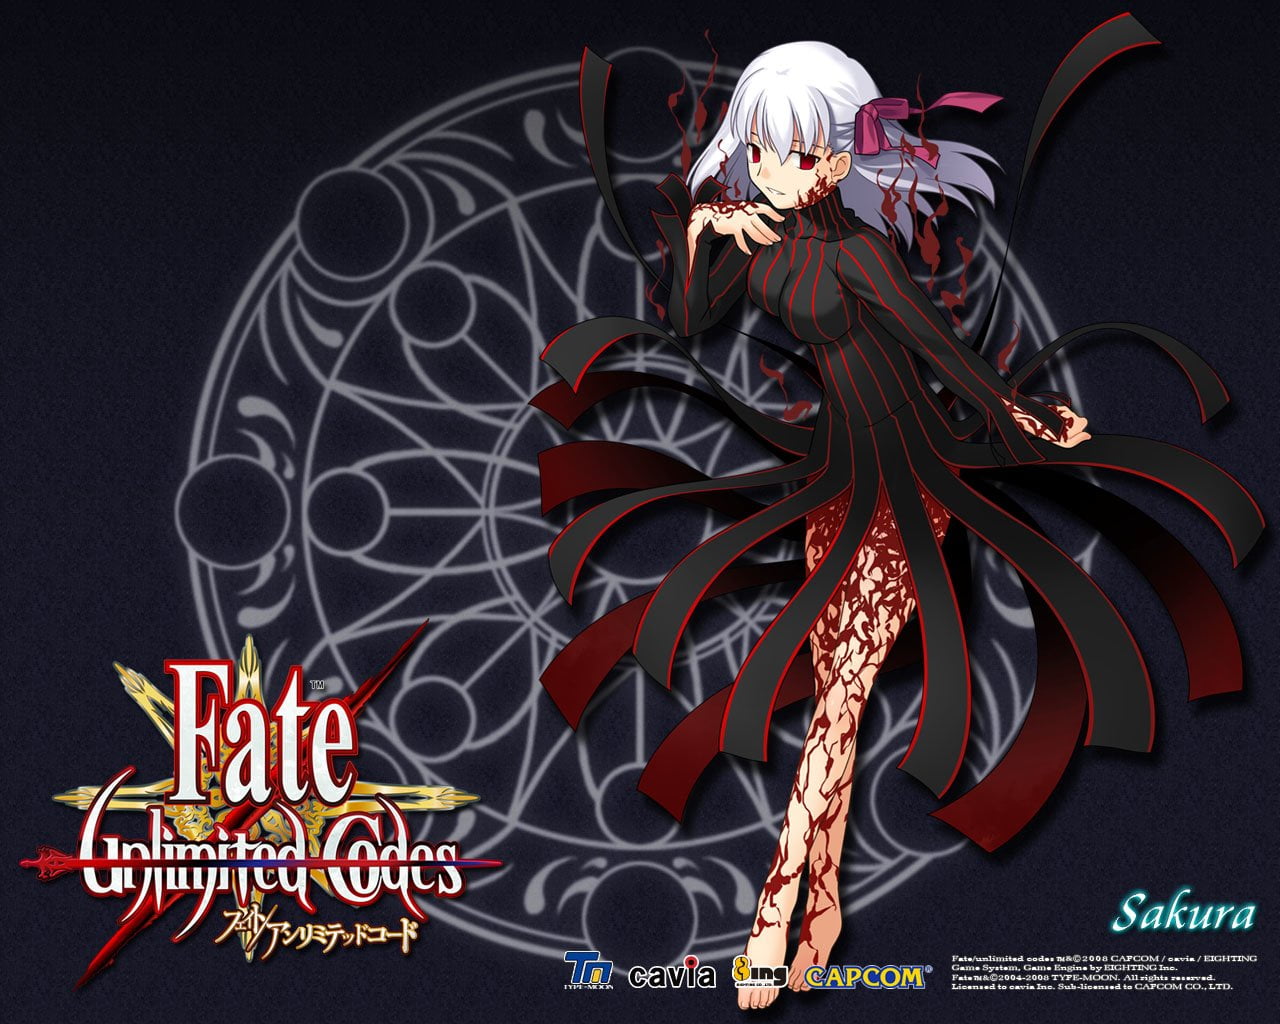 Fate Series, Fate/unlimited codes, Sakura Matou, art and craft